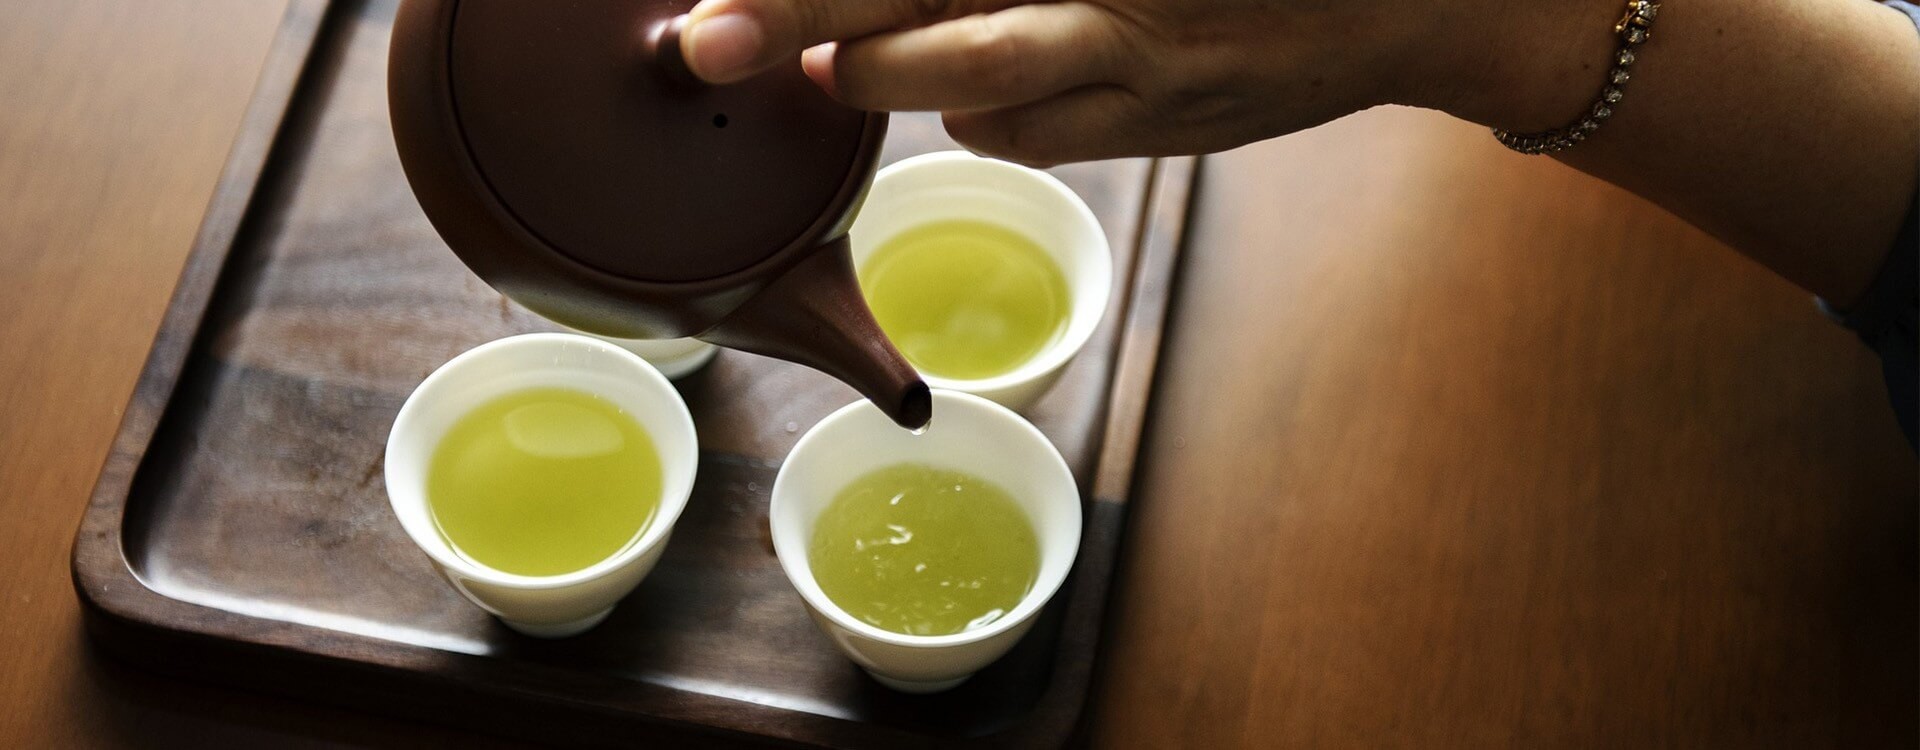 Zeleným čajom proti vážnym chorobám